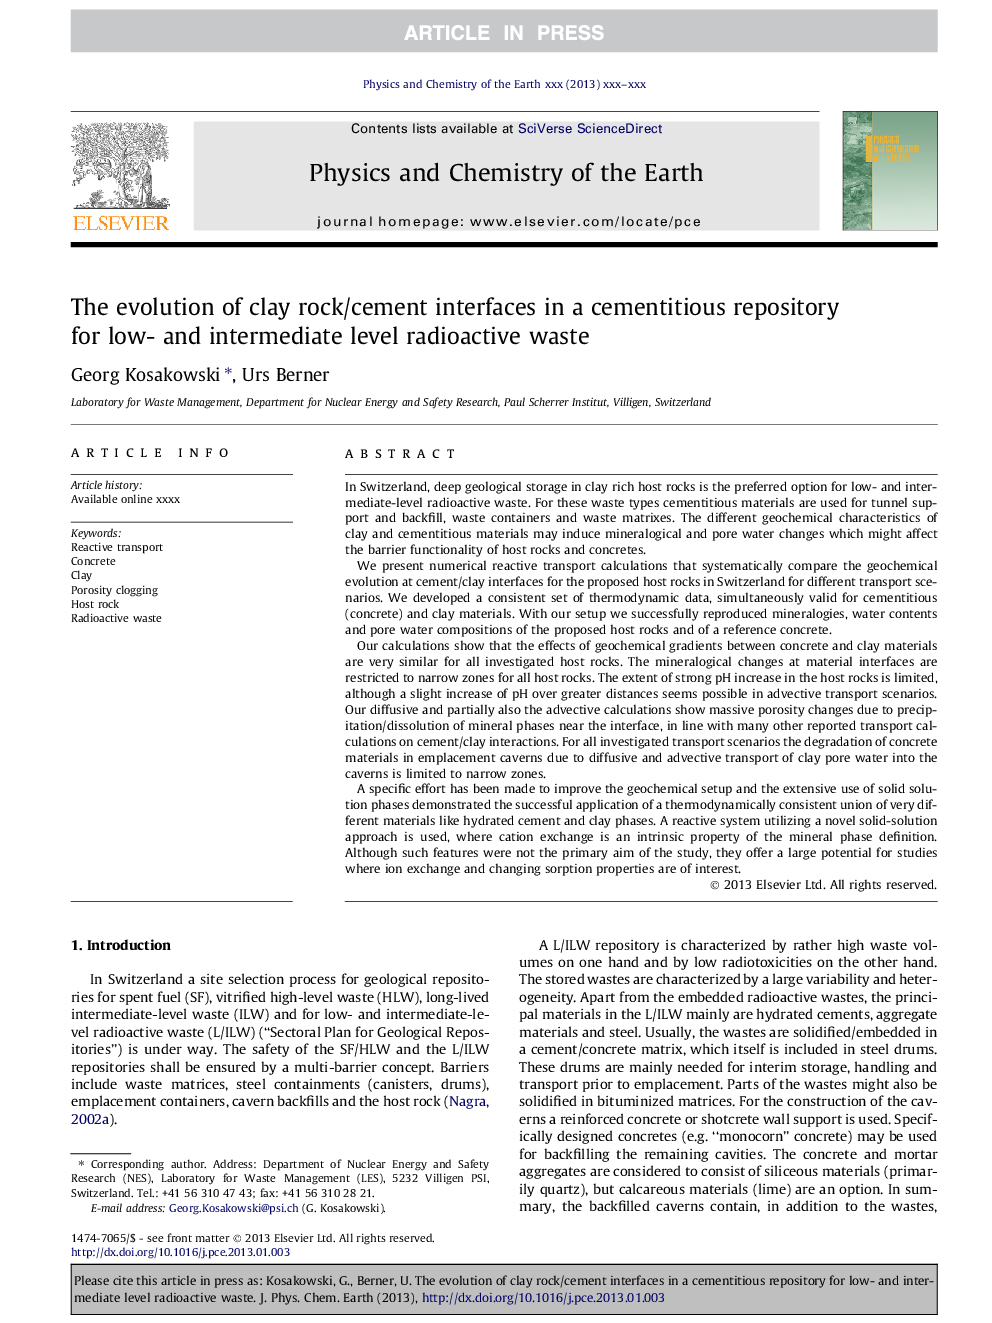 تکامل اتصالات سنگ / سیمان رس در یک مخزن سیمانی برای سطوح کم و متوسط ​​رادیواکتیو 